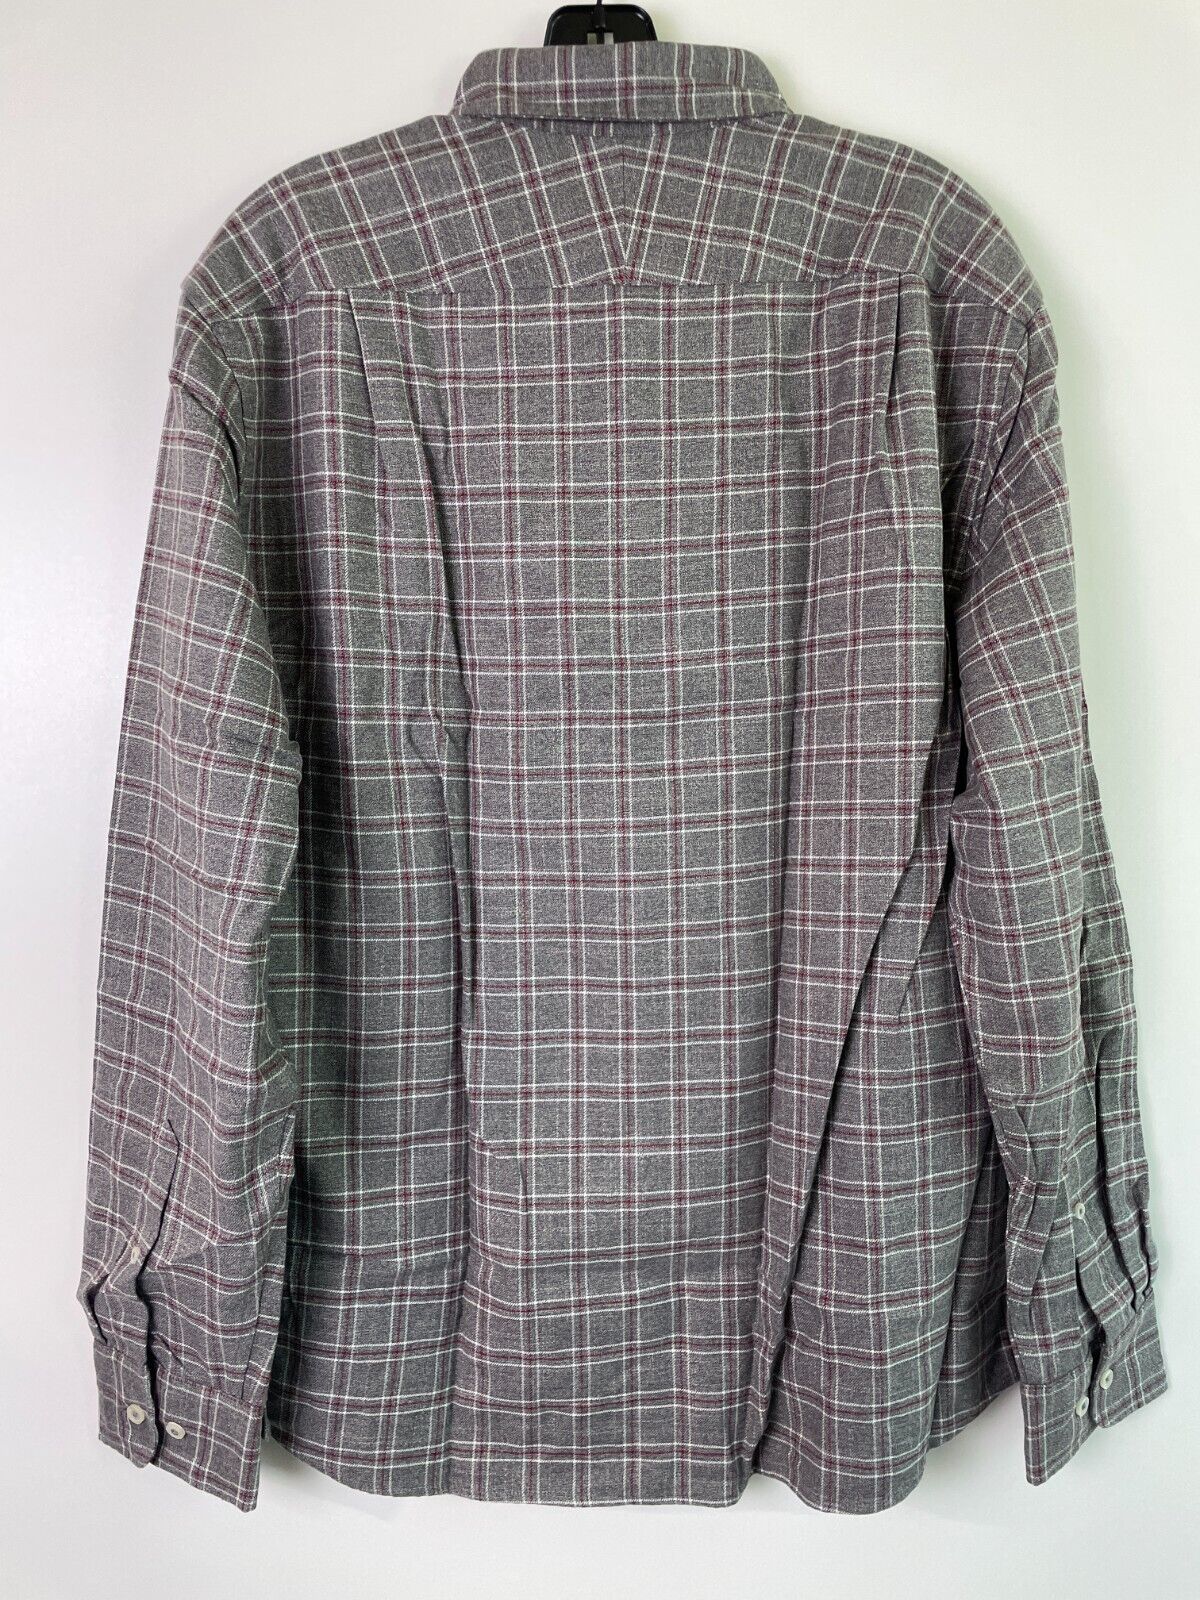 Charles Tyrwhitt Mens L Triple Windowpane Non-Iron Twill Shirt Gray Button Down